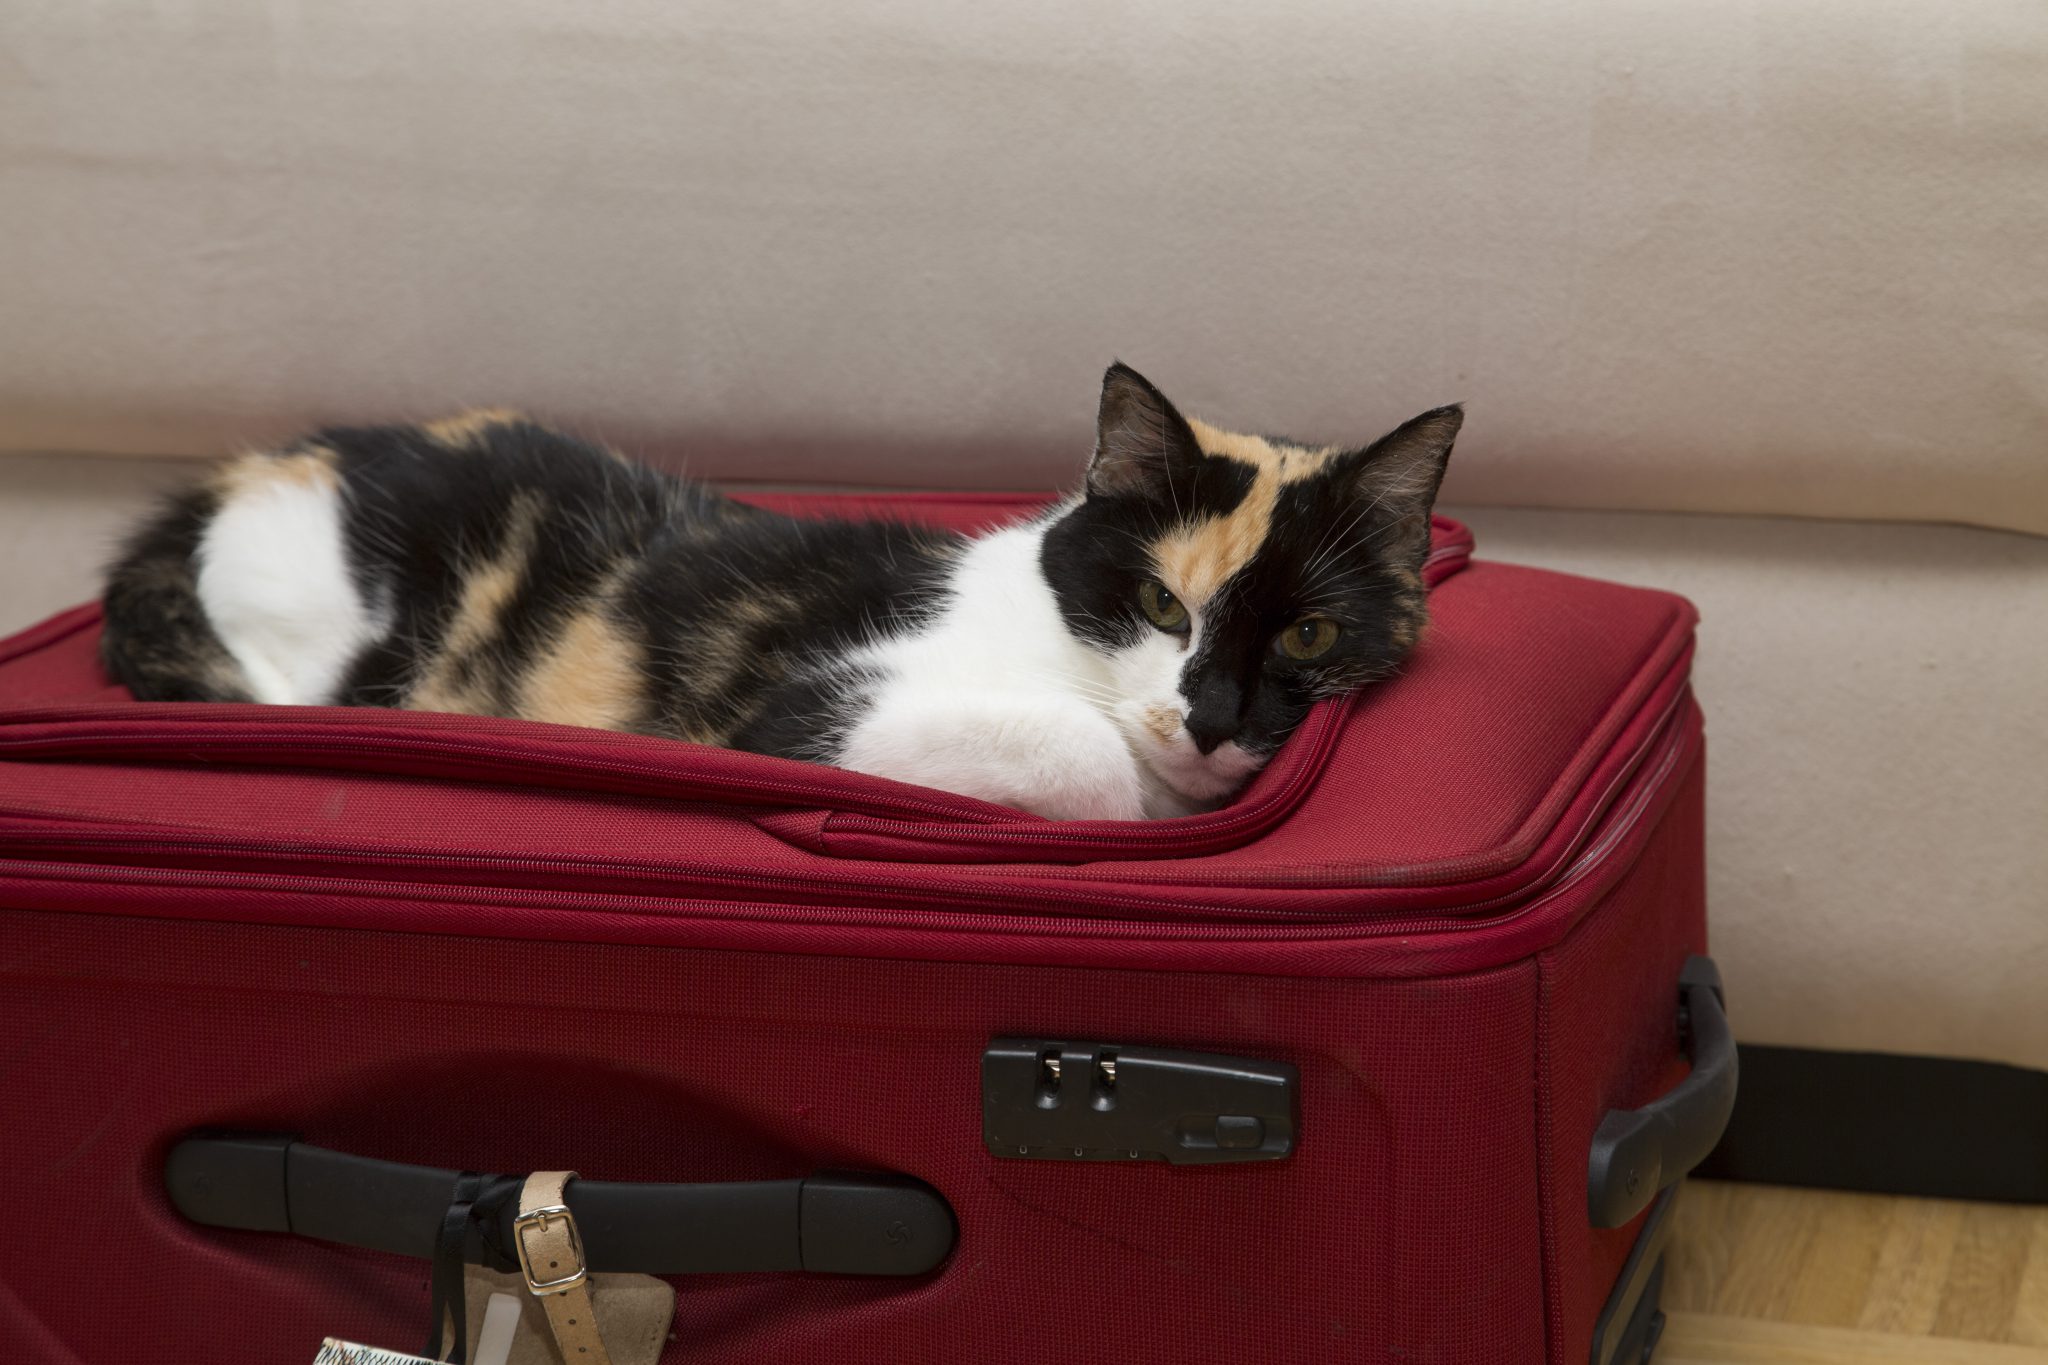 Tipps zum Kofferpacken: 5 praktische Gadgets fürs Gepäck - Business Insider